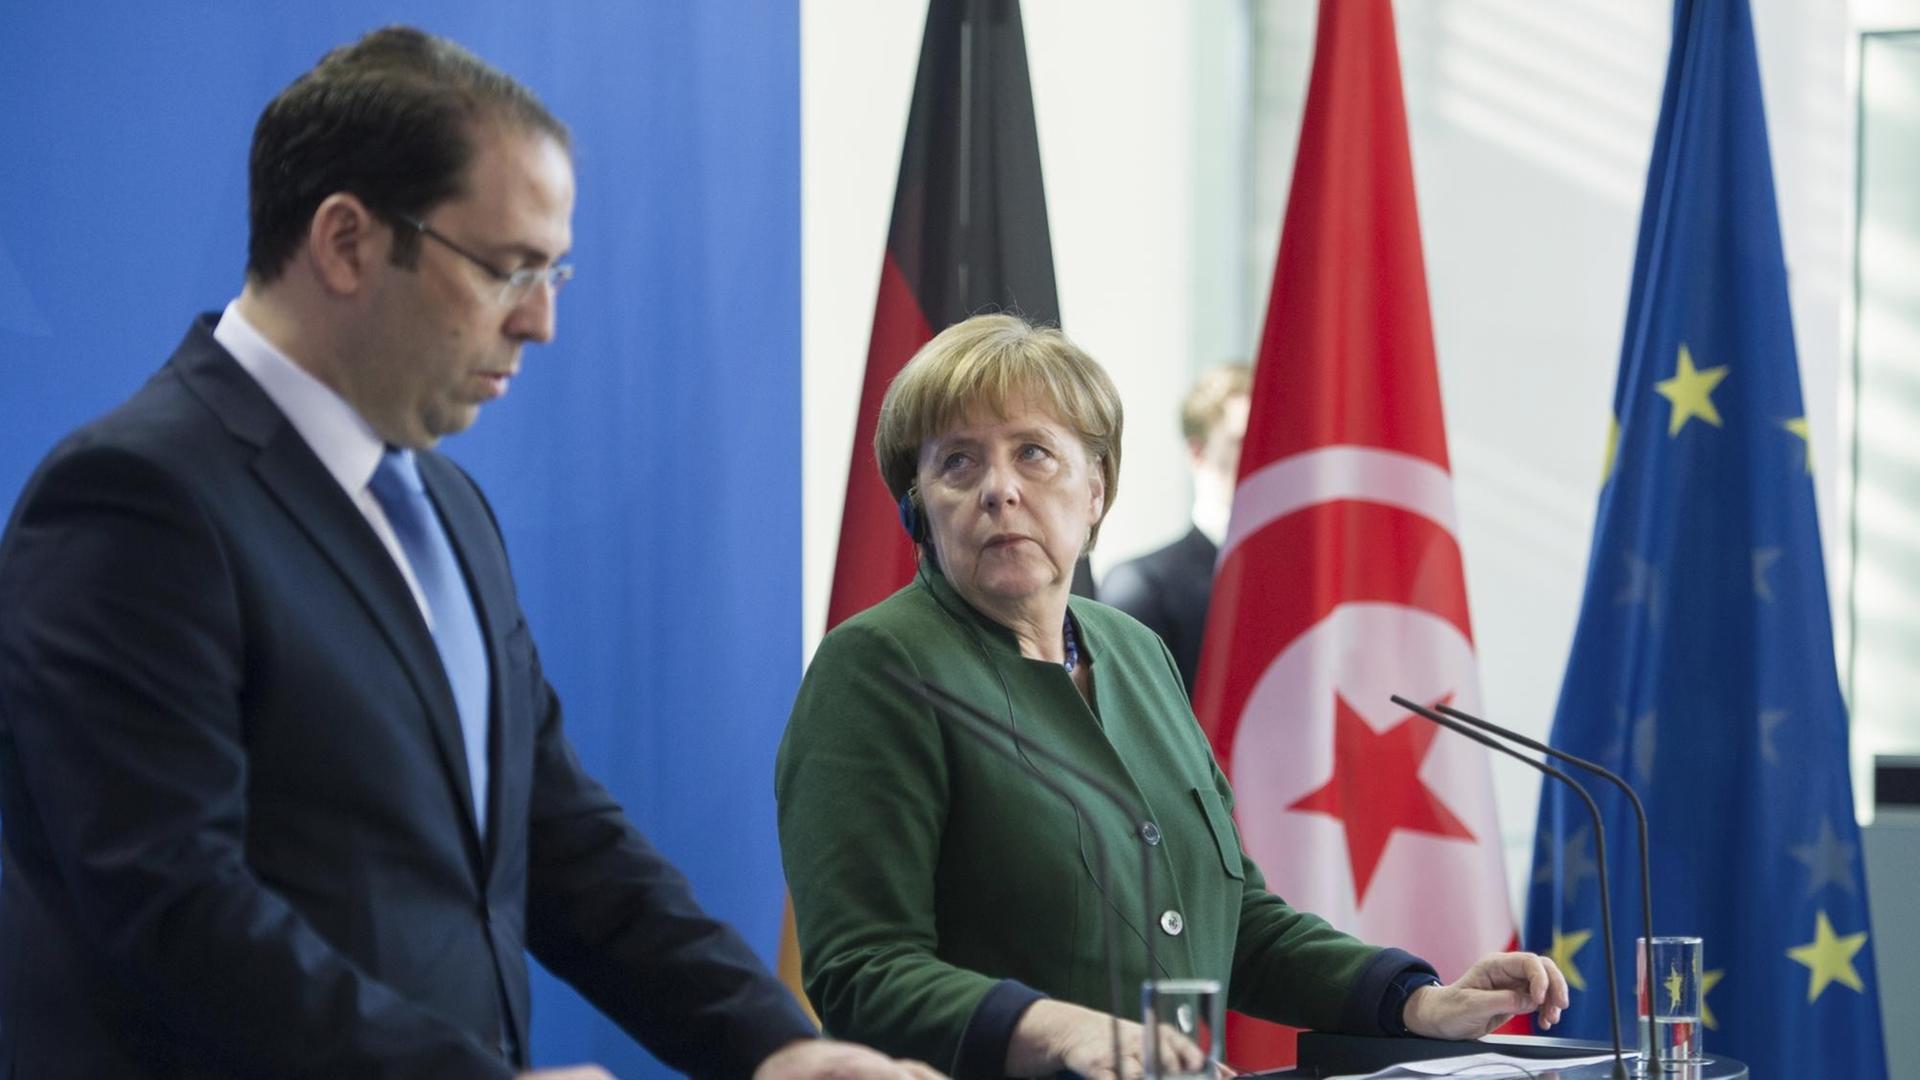 Bundeskanzlerin Angela Merkel und der tunesische Ministerpräsident Youssef Chahed bei ihrer Pressekonferenz am 14.2.2017 in Berlin.